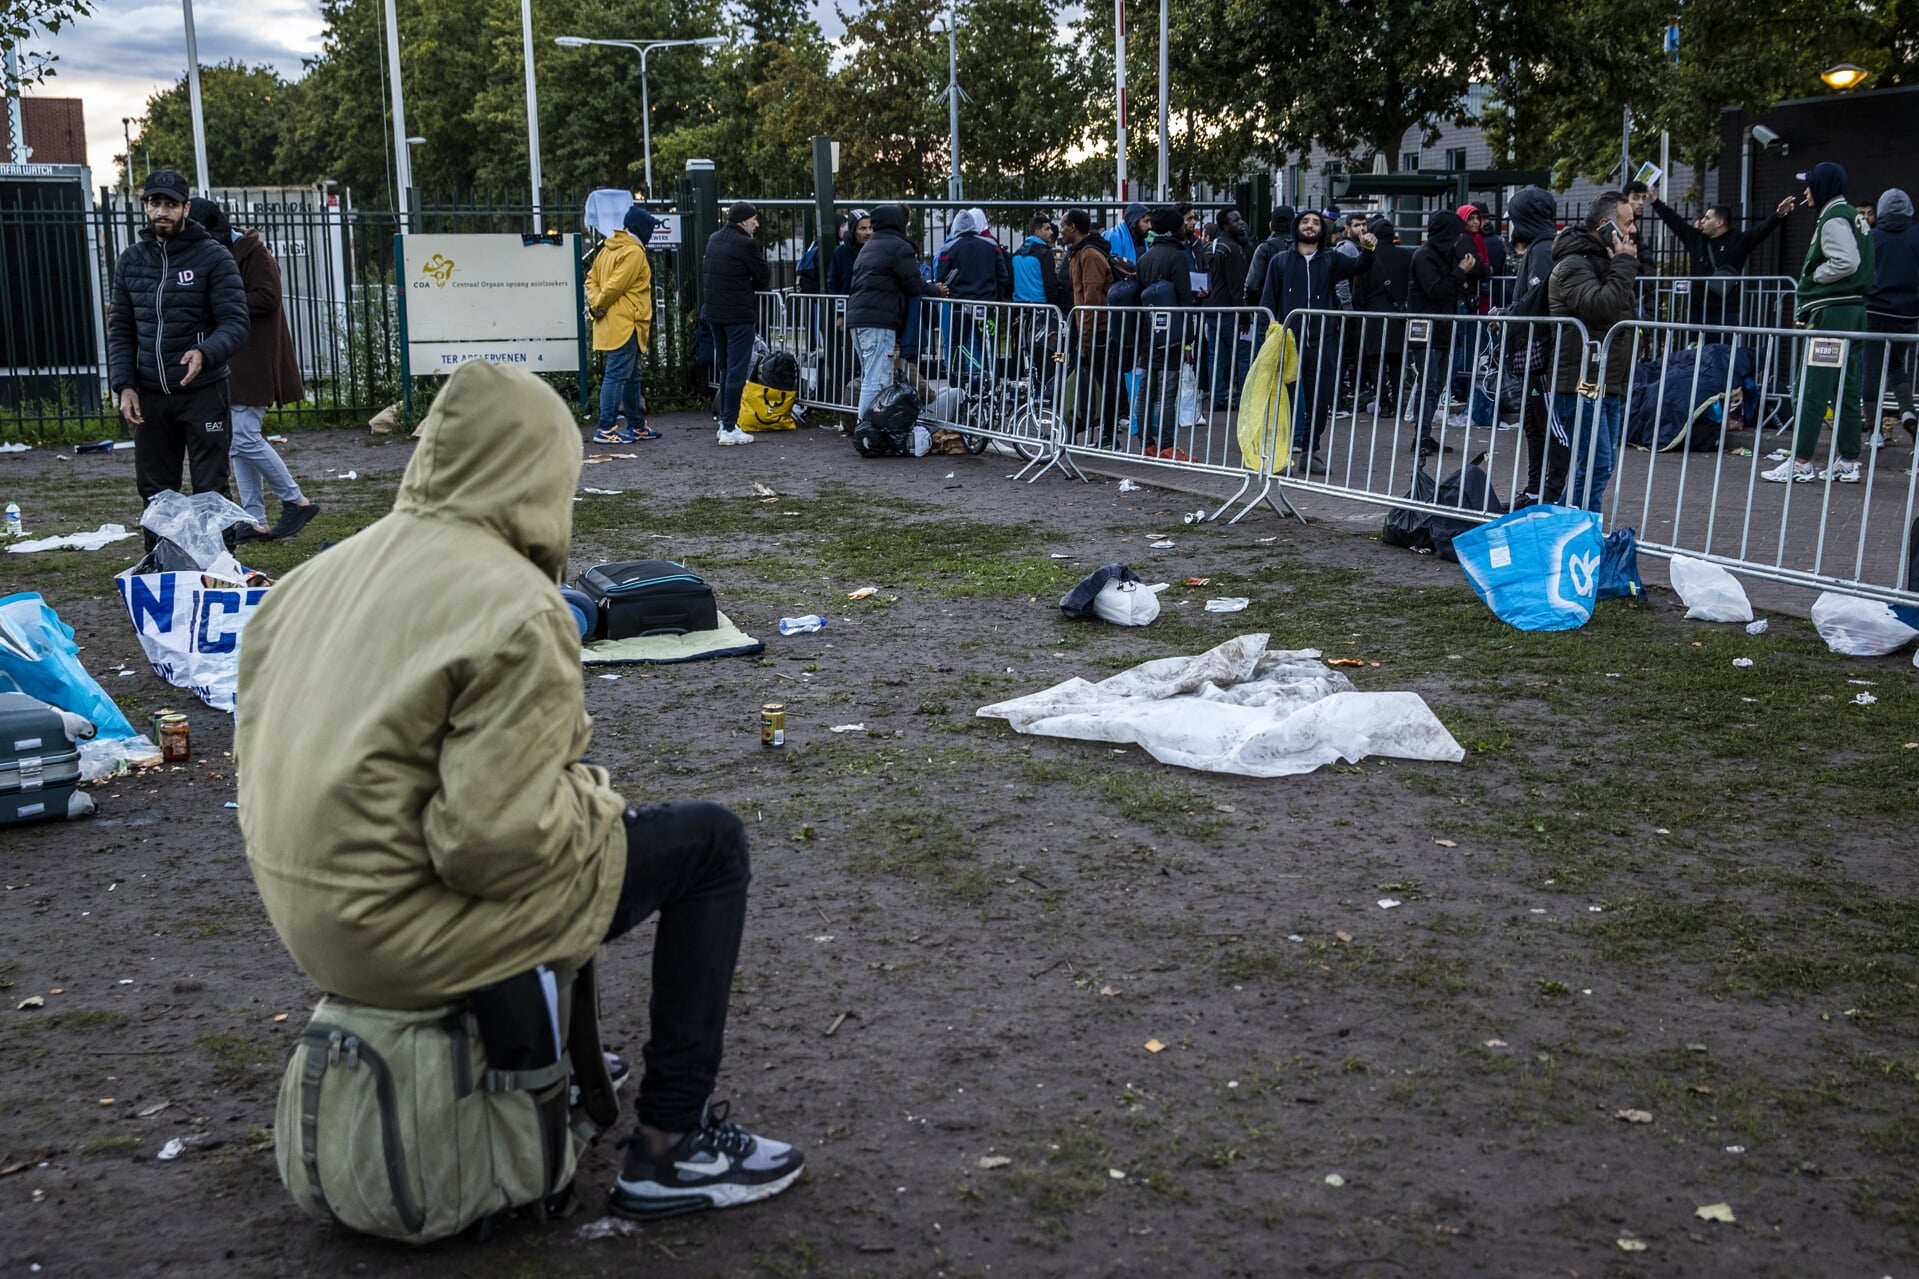 Eerder dit jaar was de druk op het aanmeldcentrum voor asielzoekers in Ter Apel zo groot dat mensen buiten moesten slapen. 